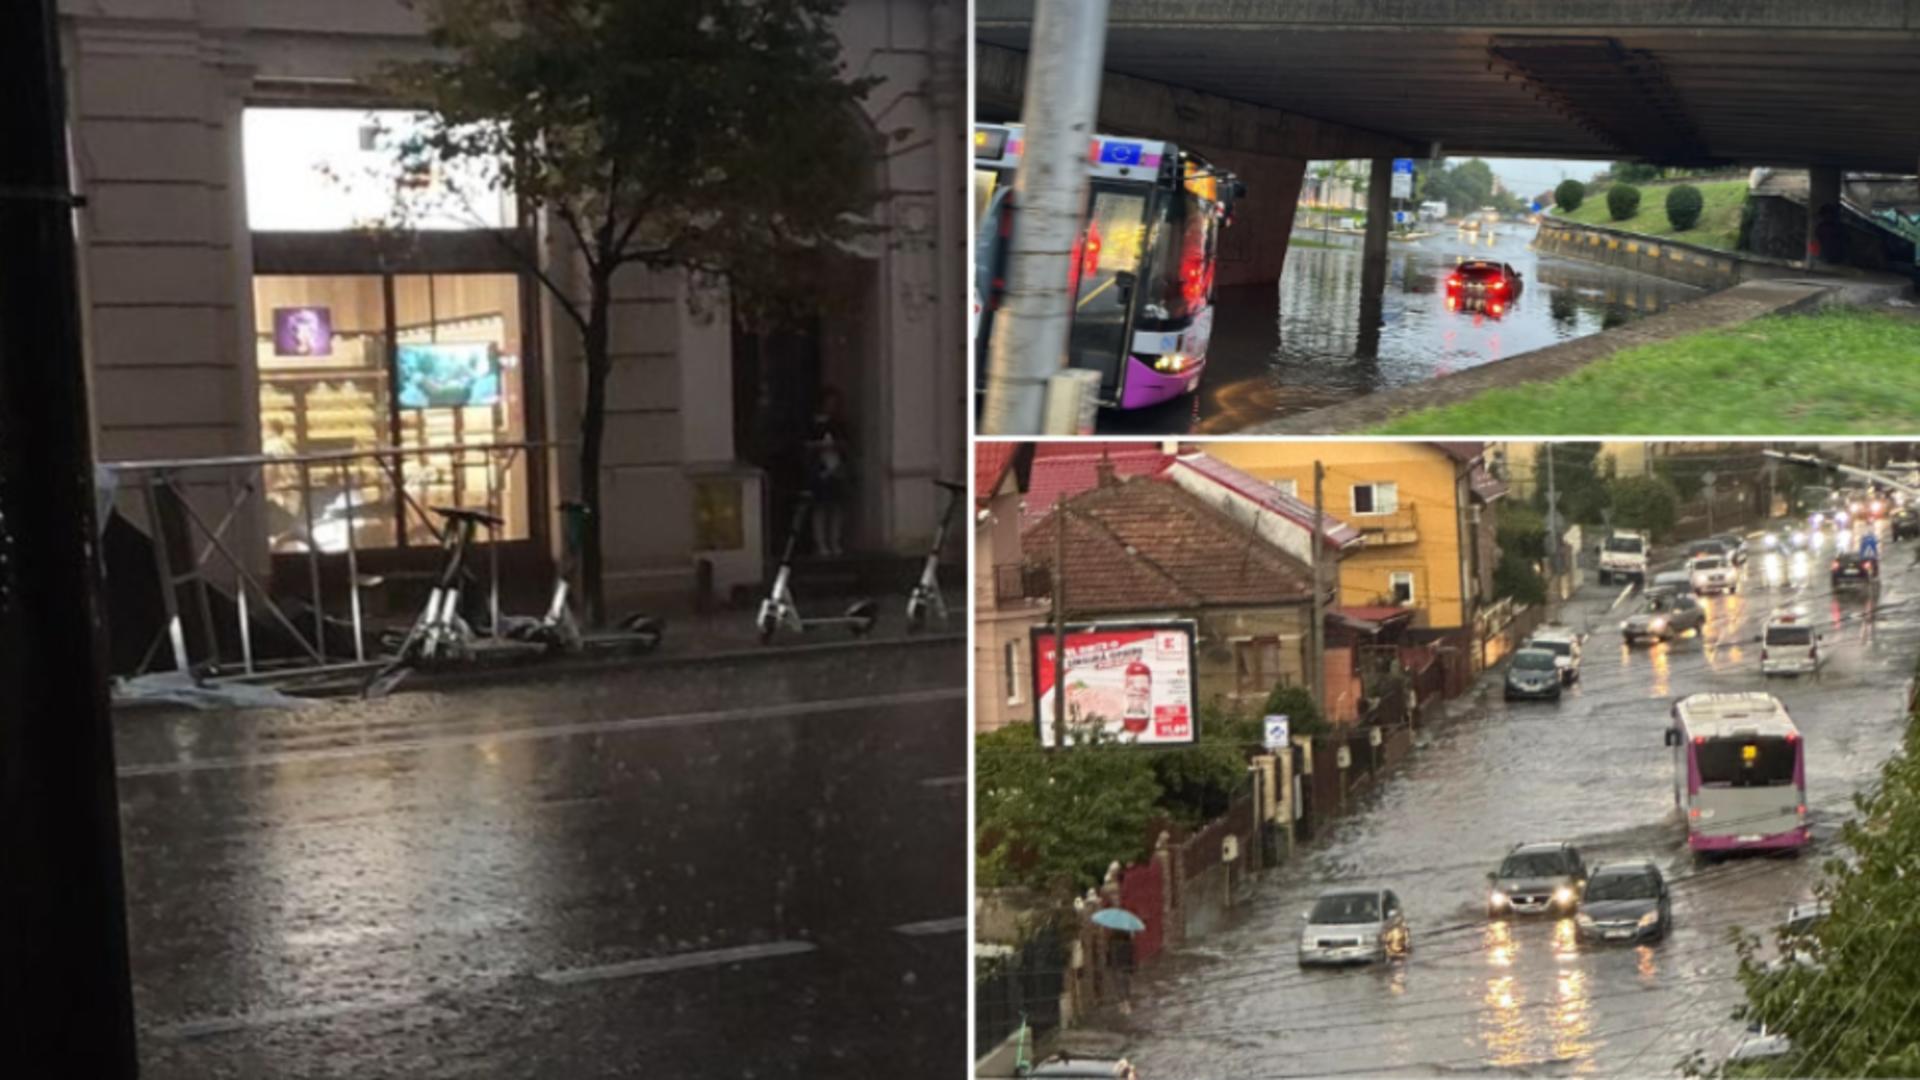 Schelă căzută în centrul Clujului și străzi inundate / Foto: Info Trafic Cluj-Napoca - Facebook